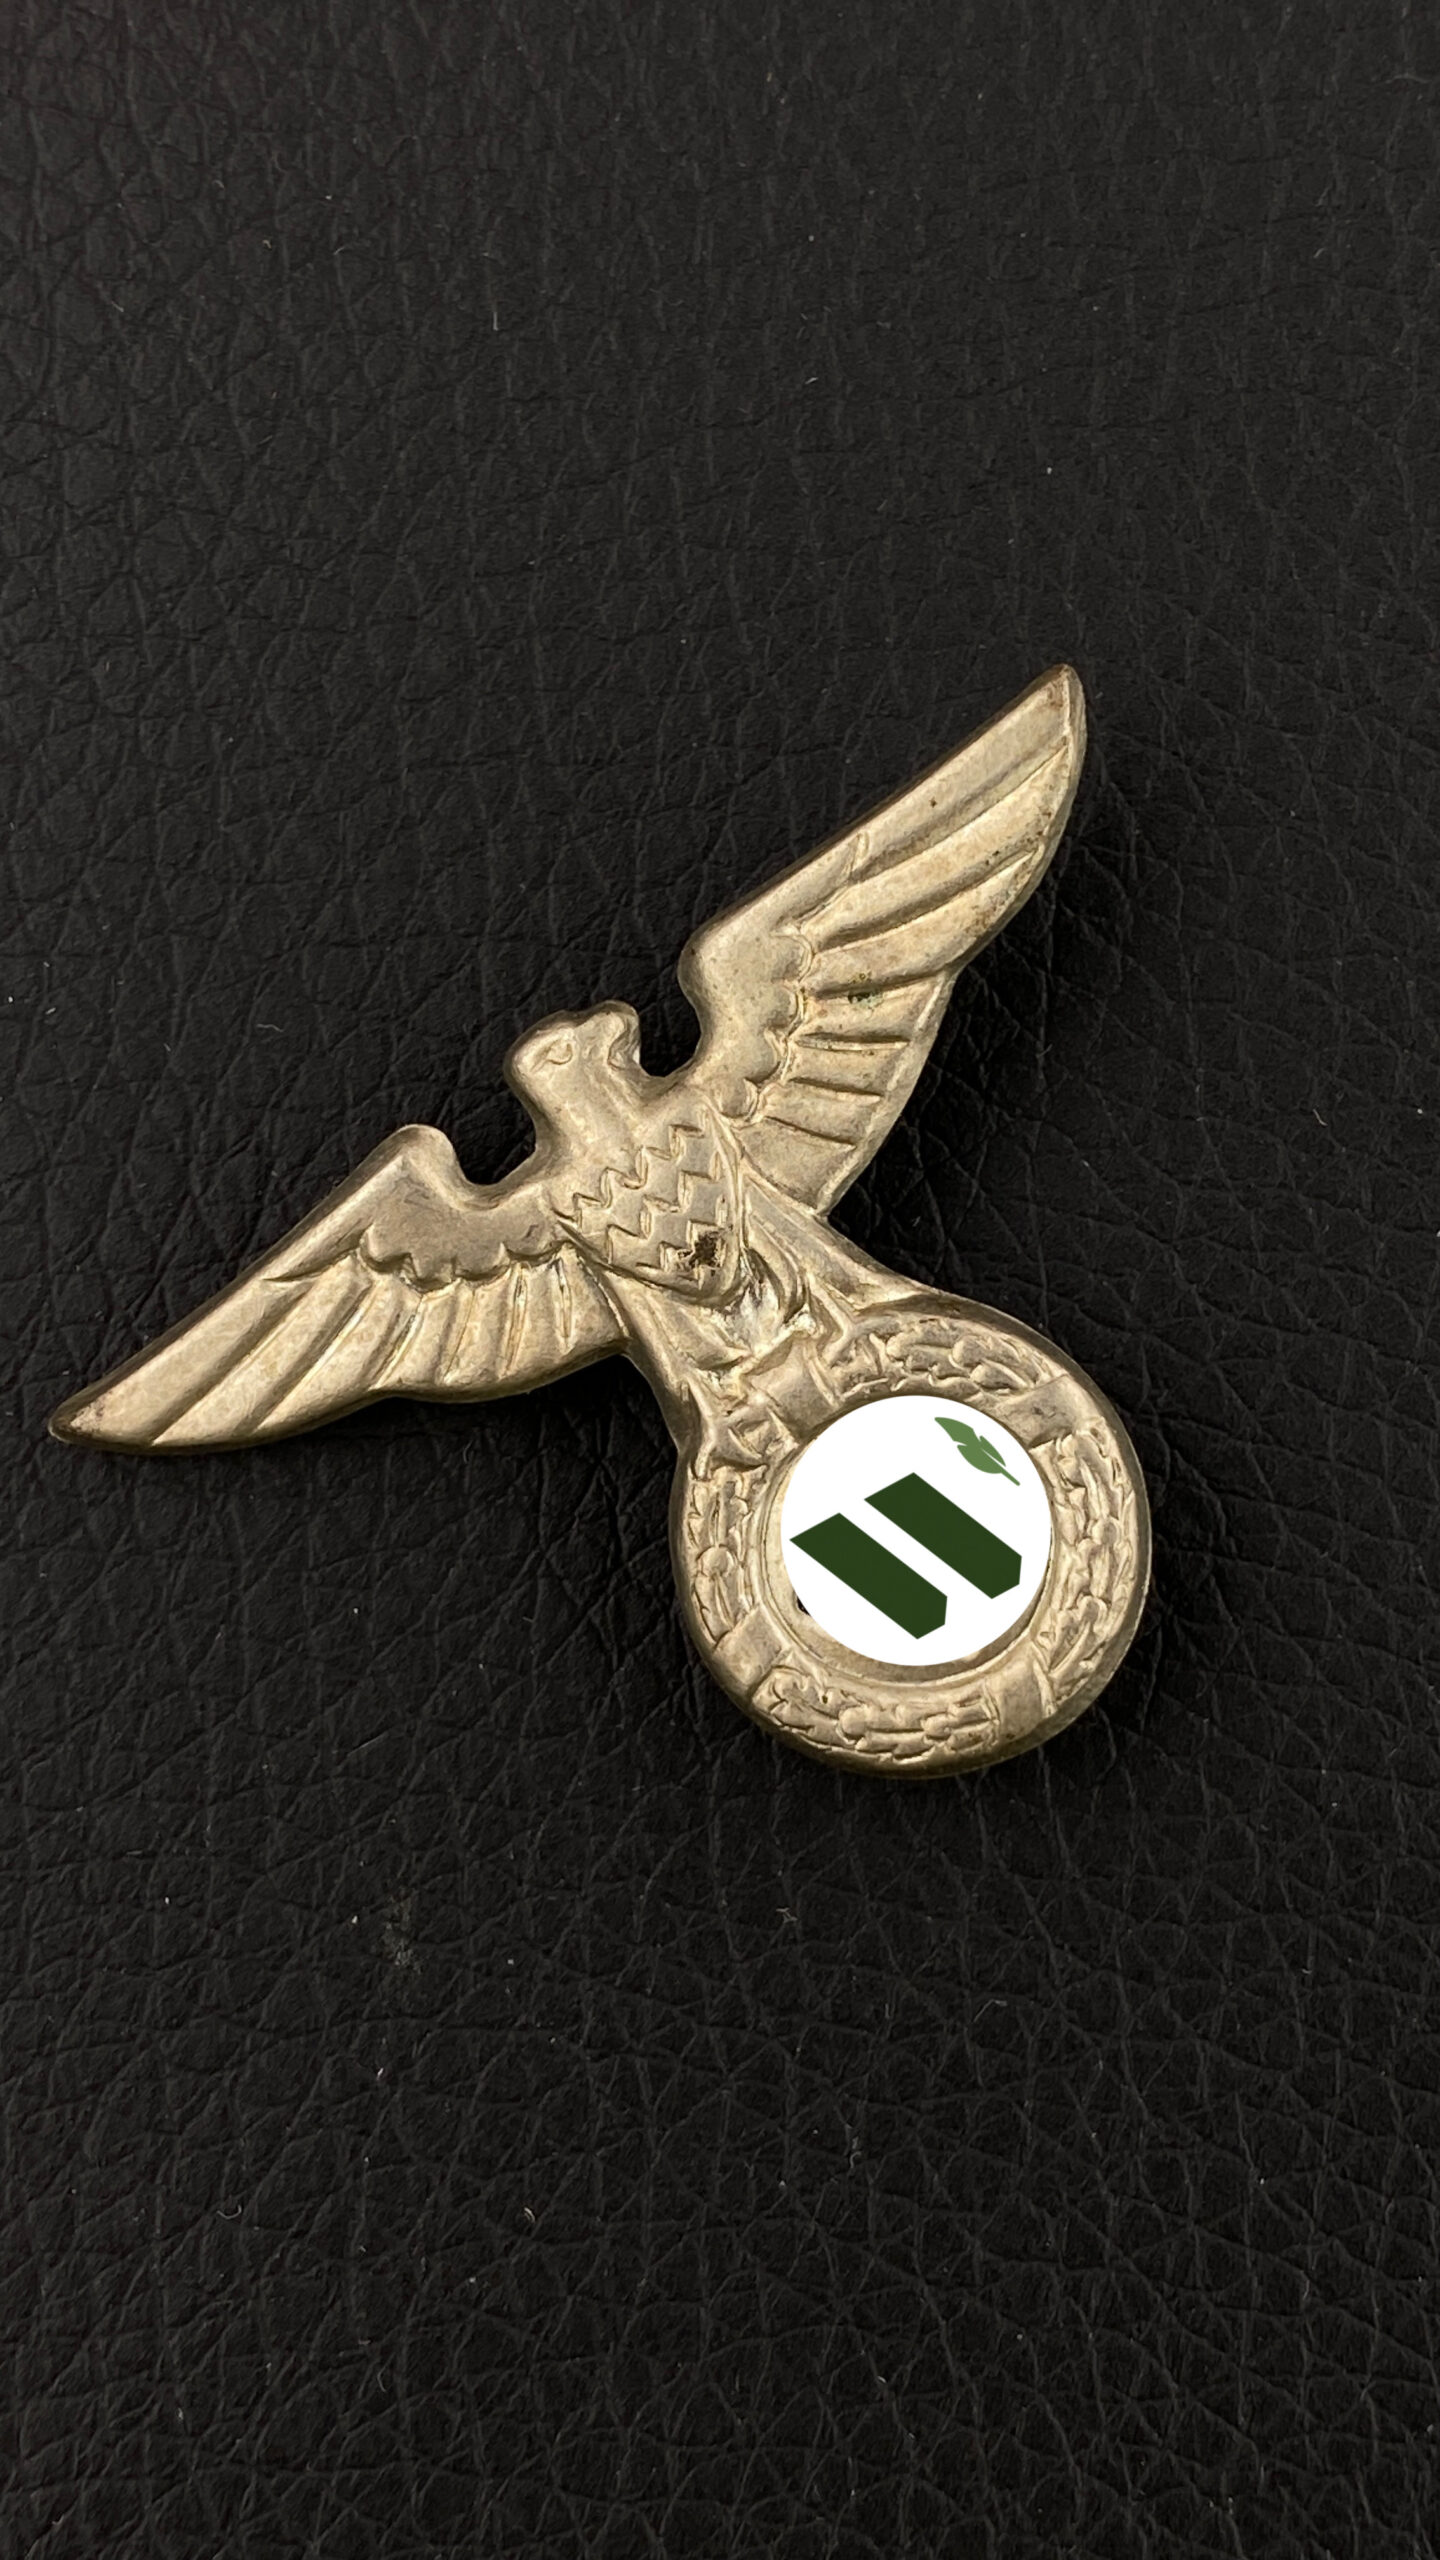 Ранняя кокарда СС/СА/НСДАП для ношения на кепи или фуражке СС.